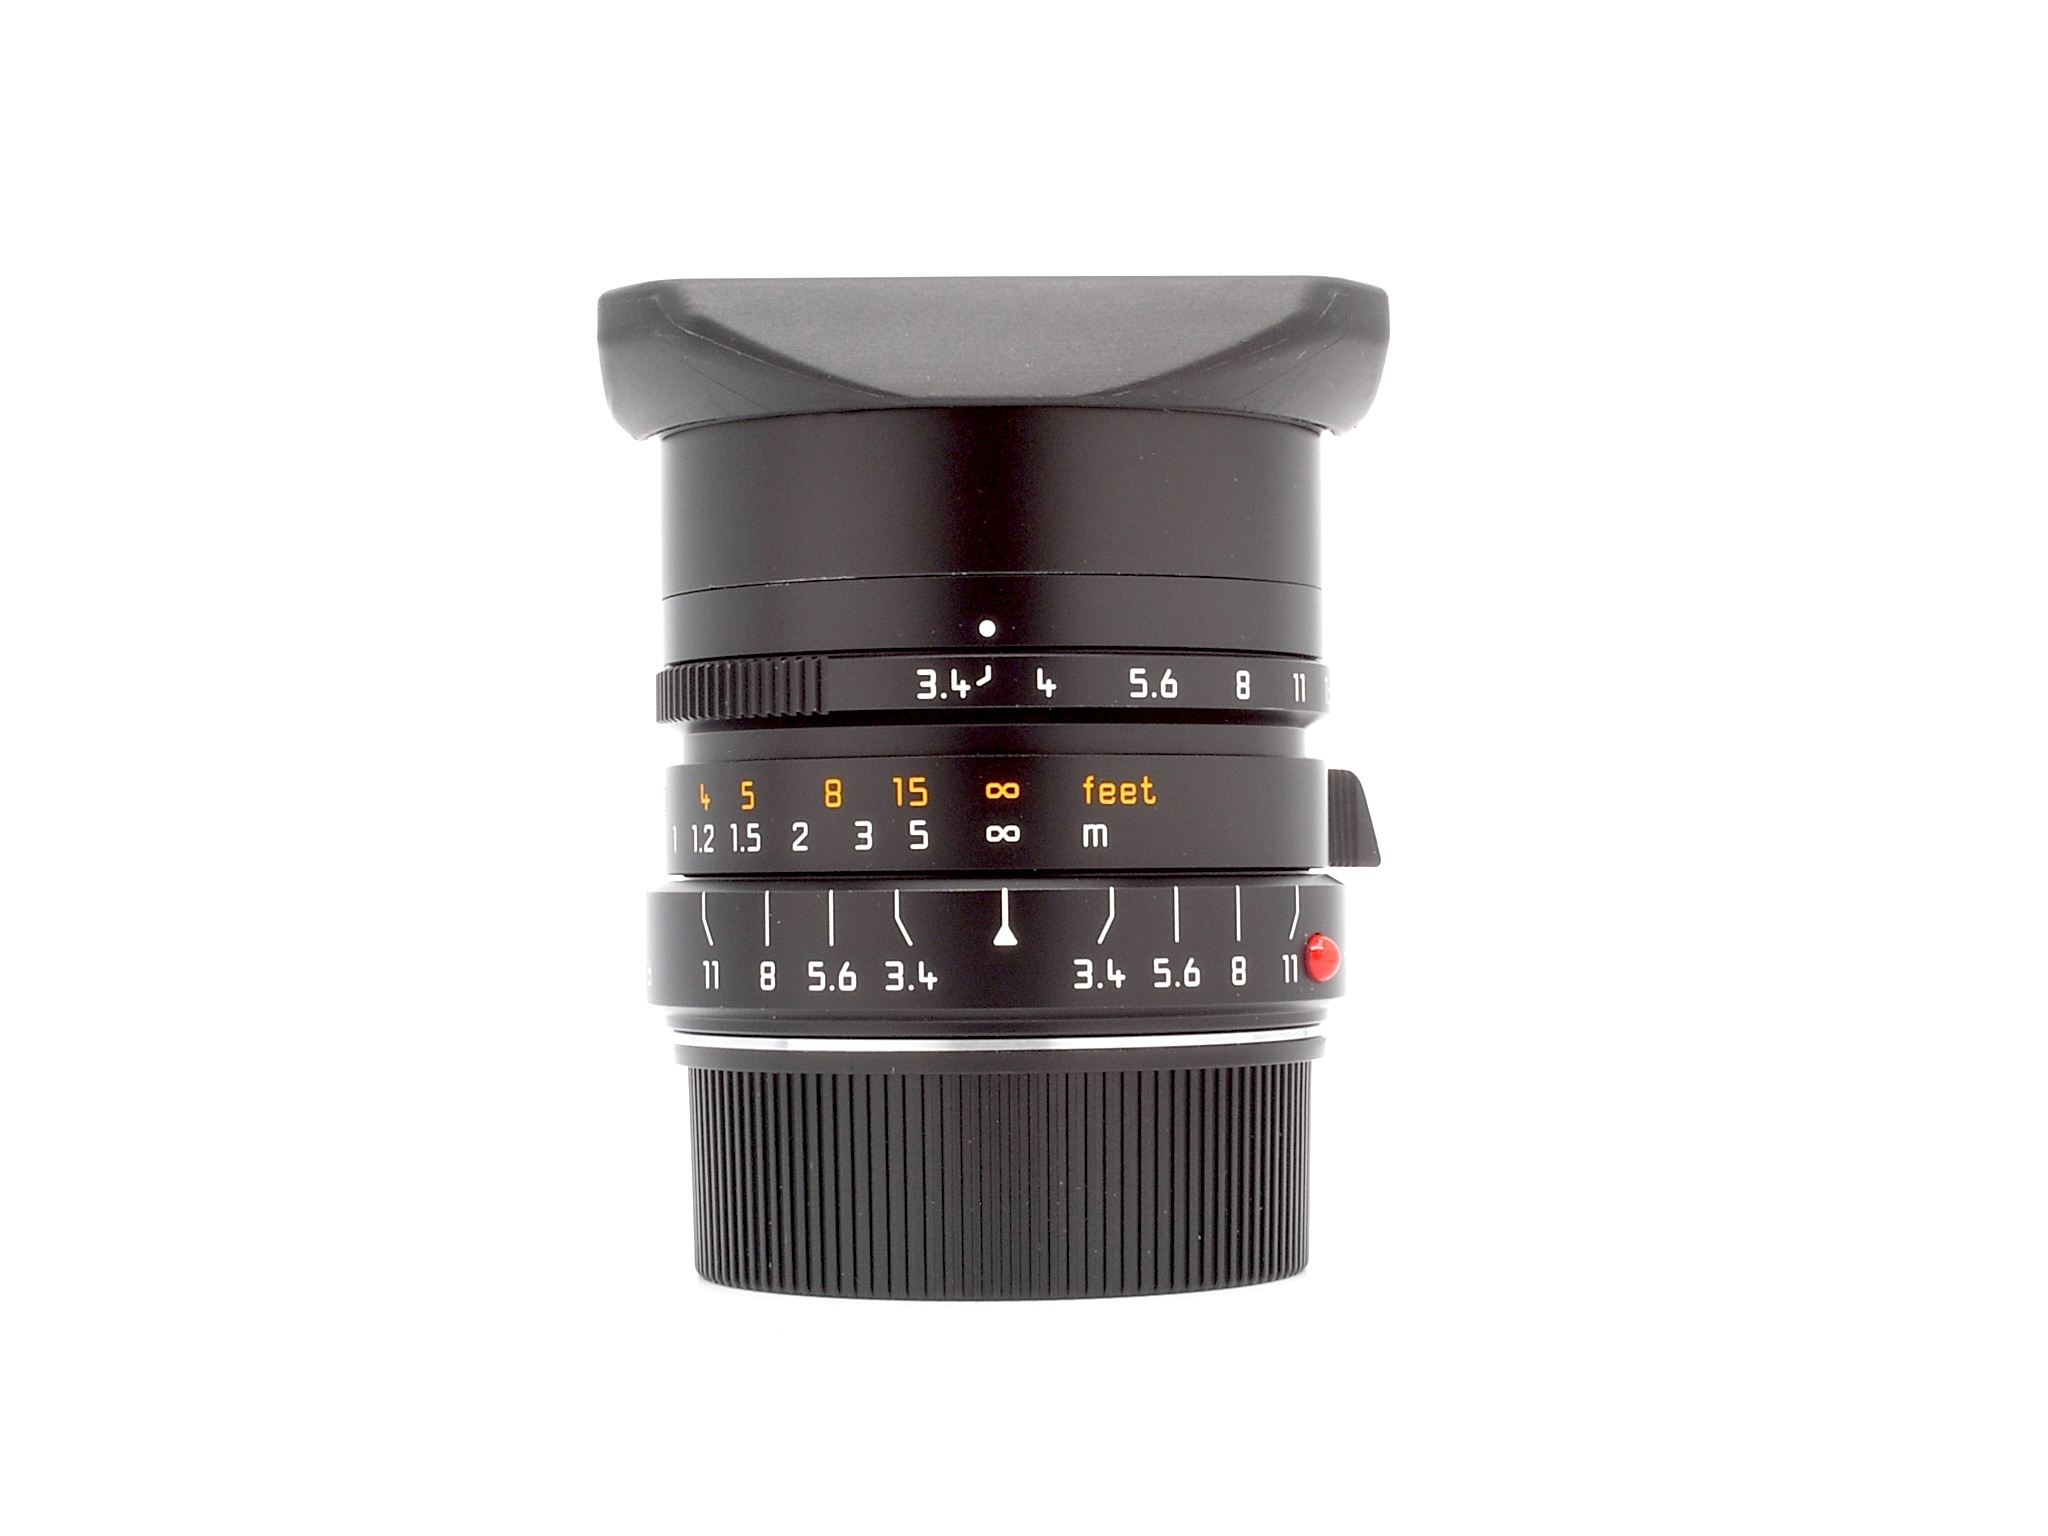 Leica Super-Elmar-M 3.4/21mm ASPH., schwarz 6Bit